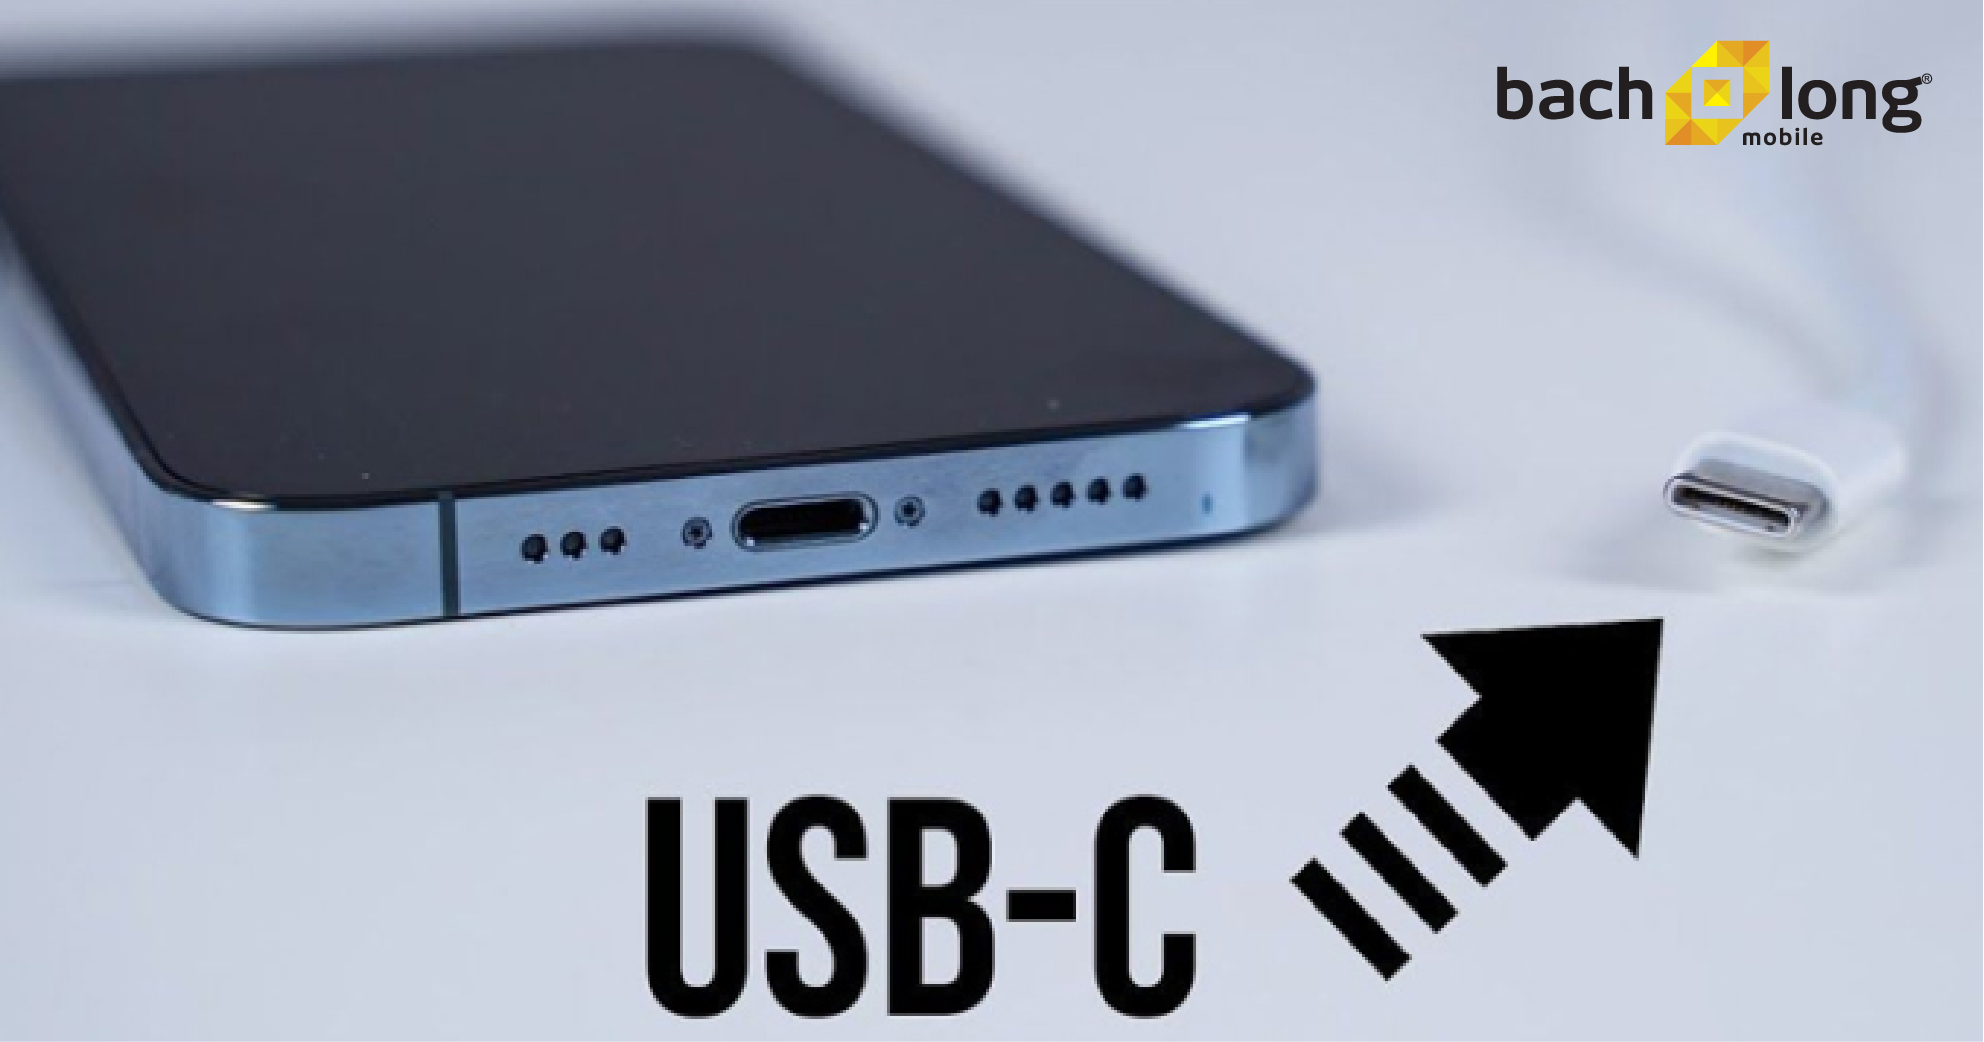 Tuân thủ quy định mới, Apple xác nhận sử dụng cổng USB-C